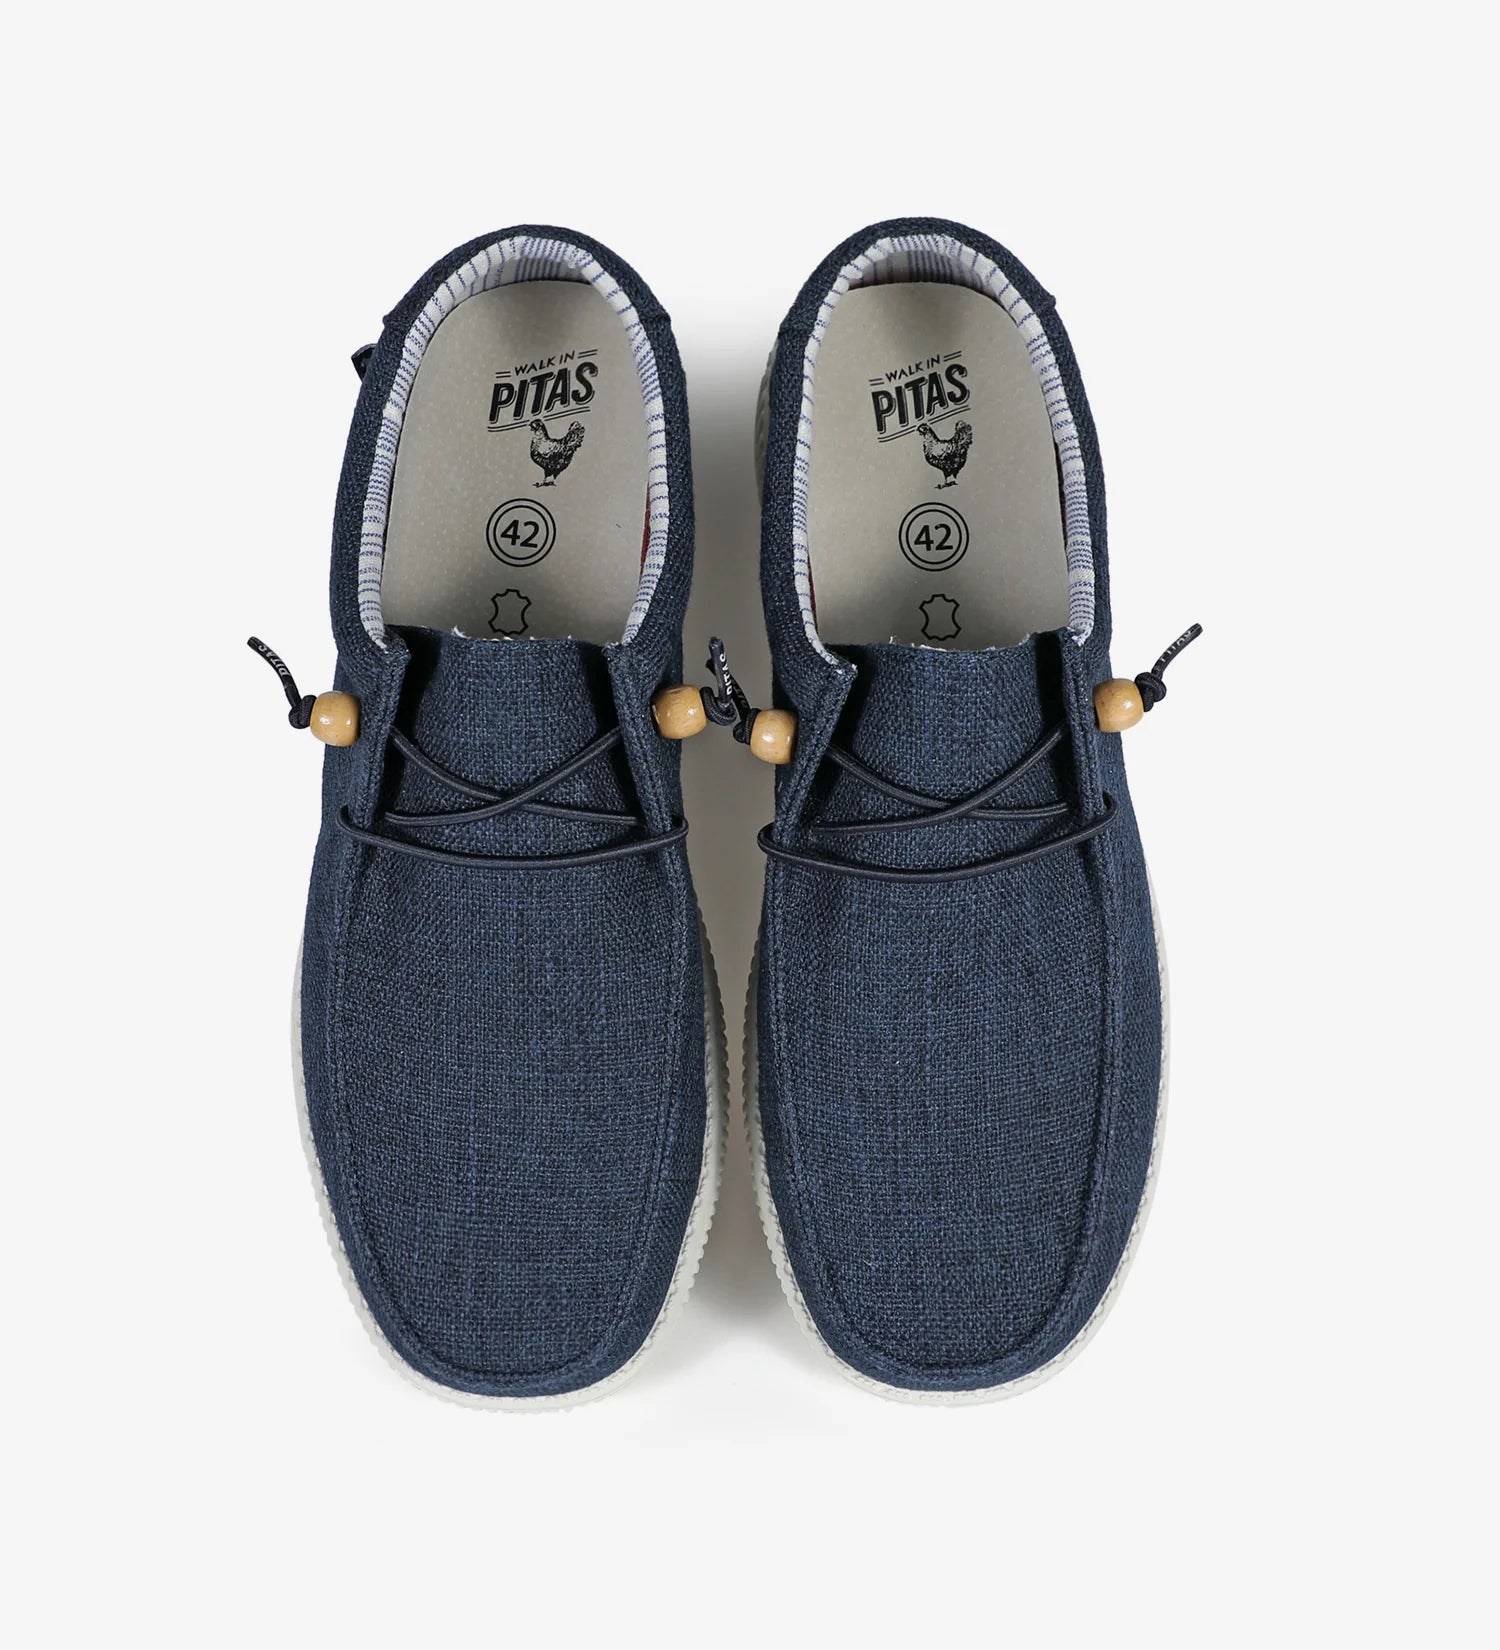 PITAS Sneakers Uomo - Blu